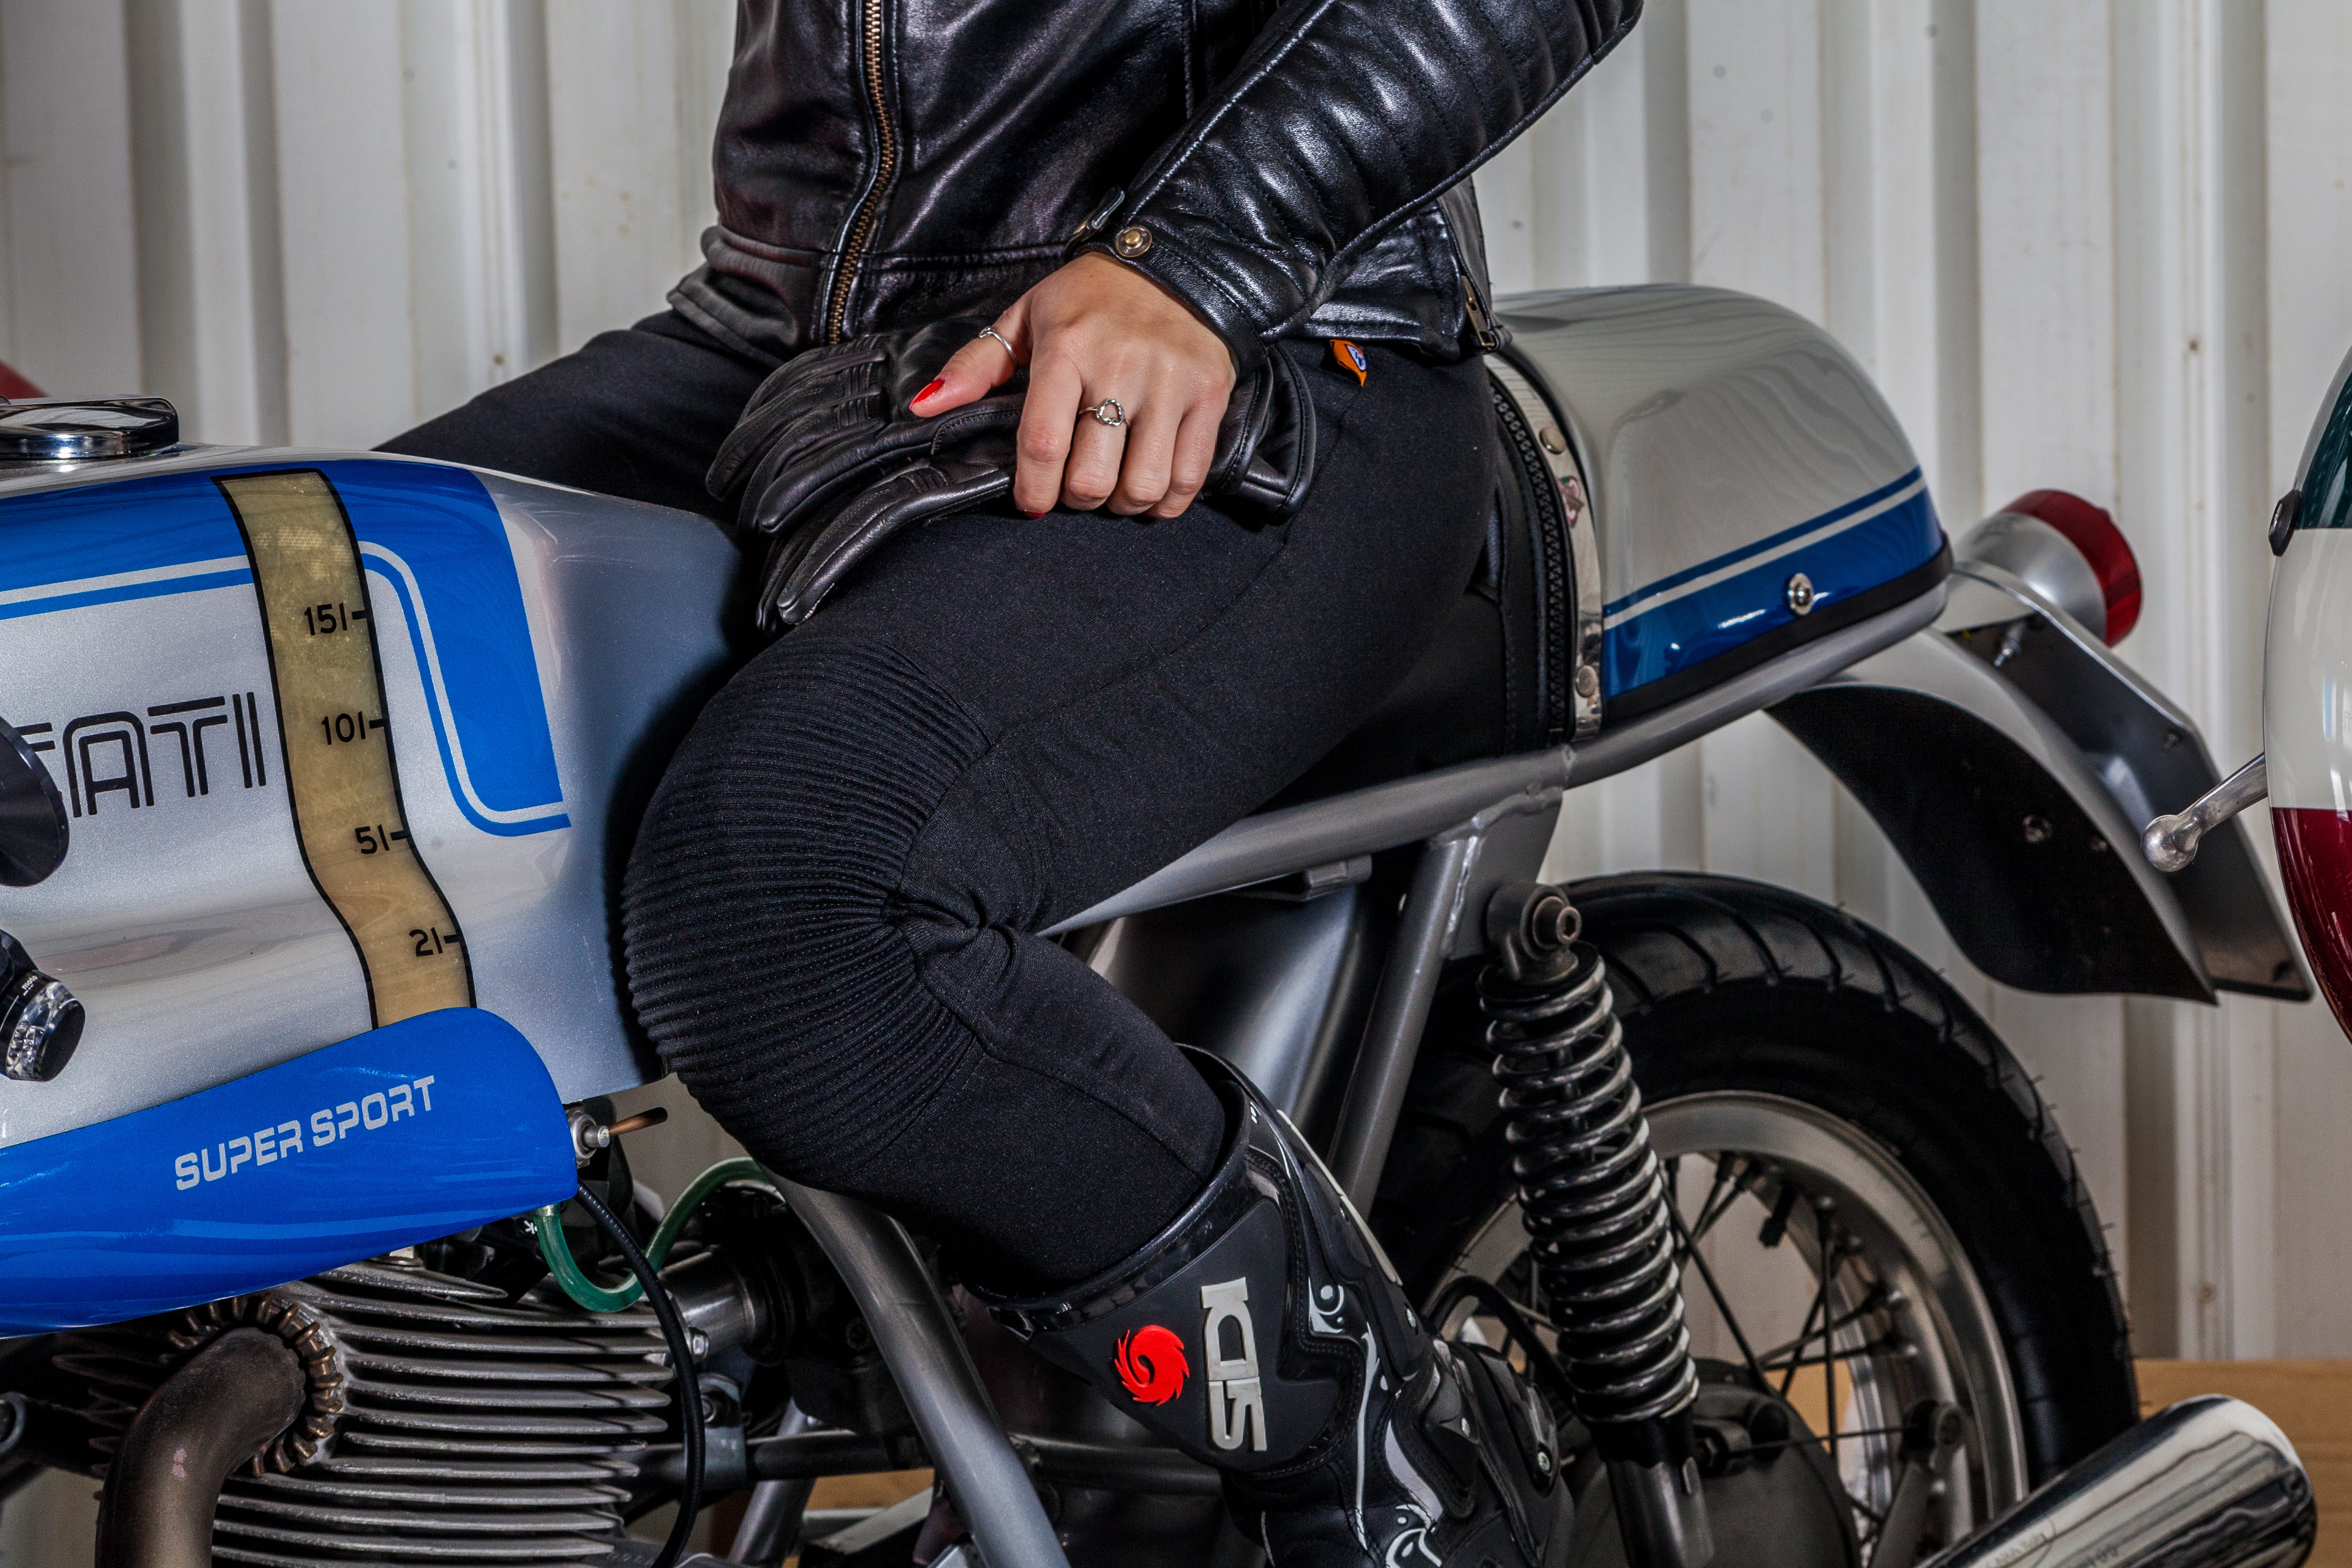 Ladies Motorcycle Ribbed Knee Design Leggings from Moto Girl